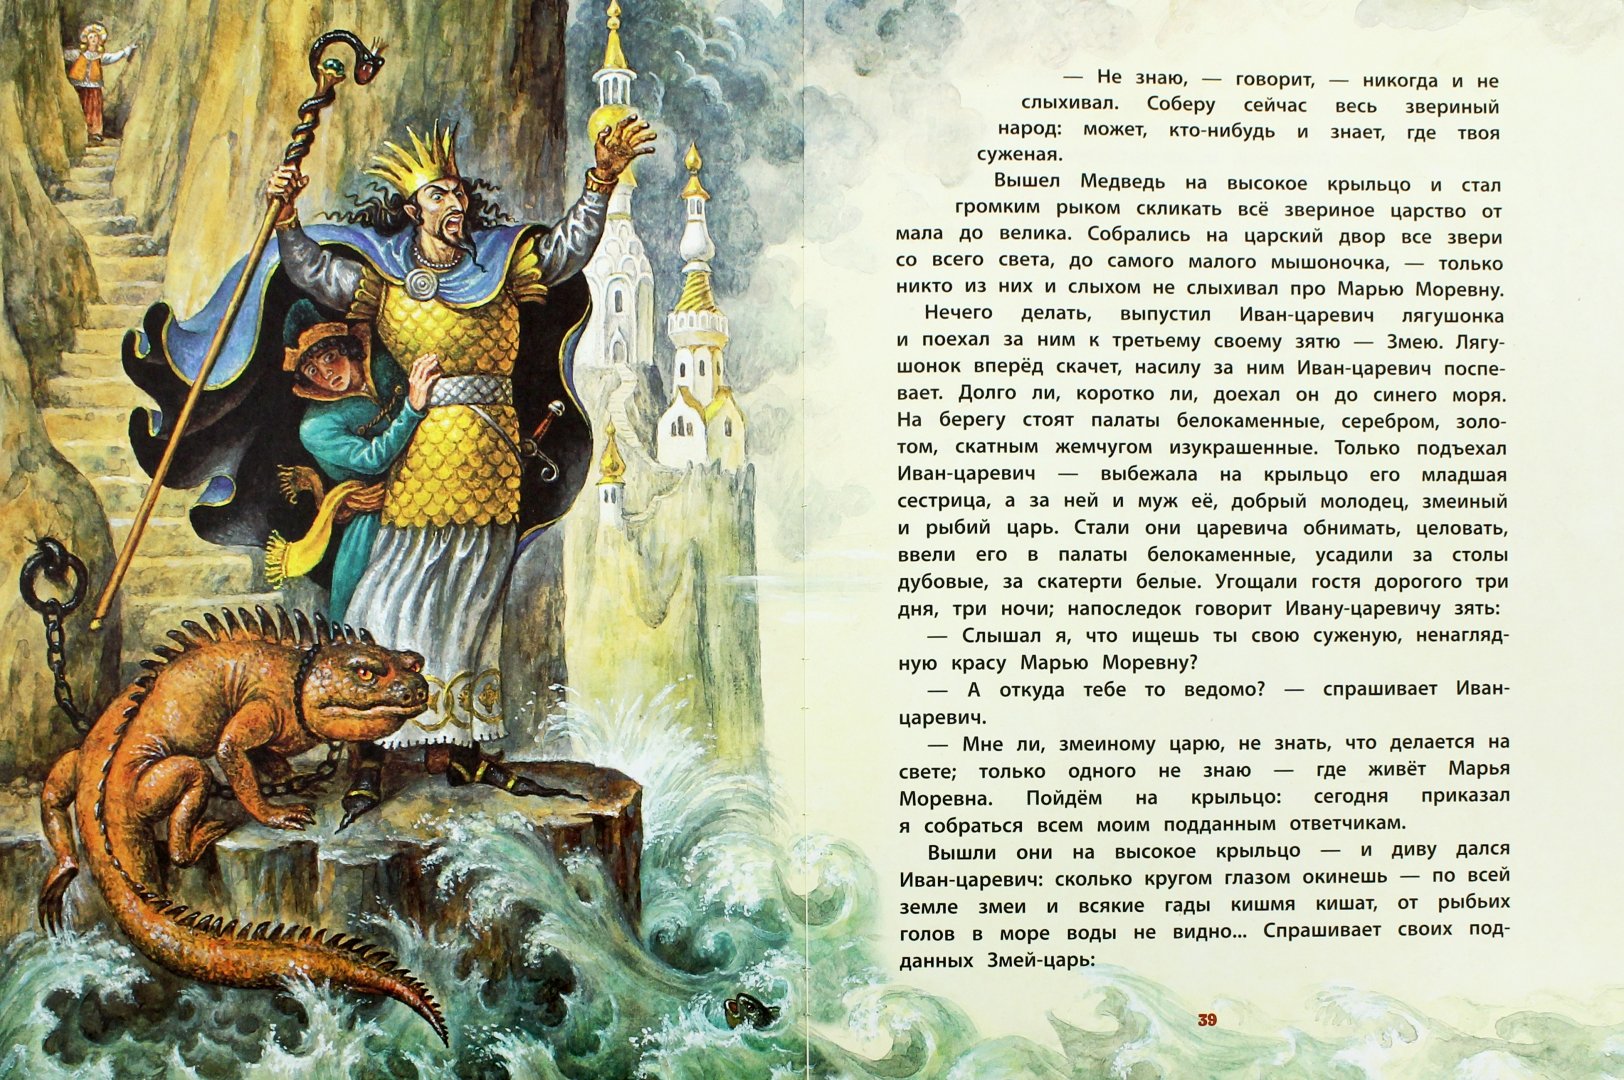 Читать сказку д. Иллюстрации Игоря Егунова.